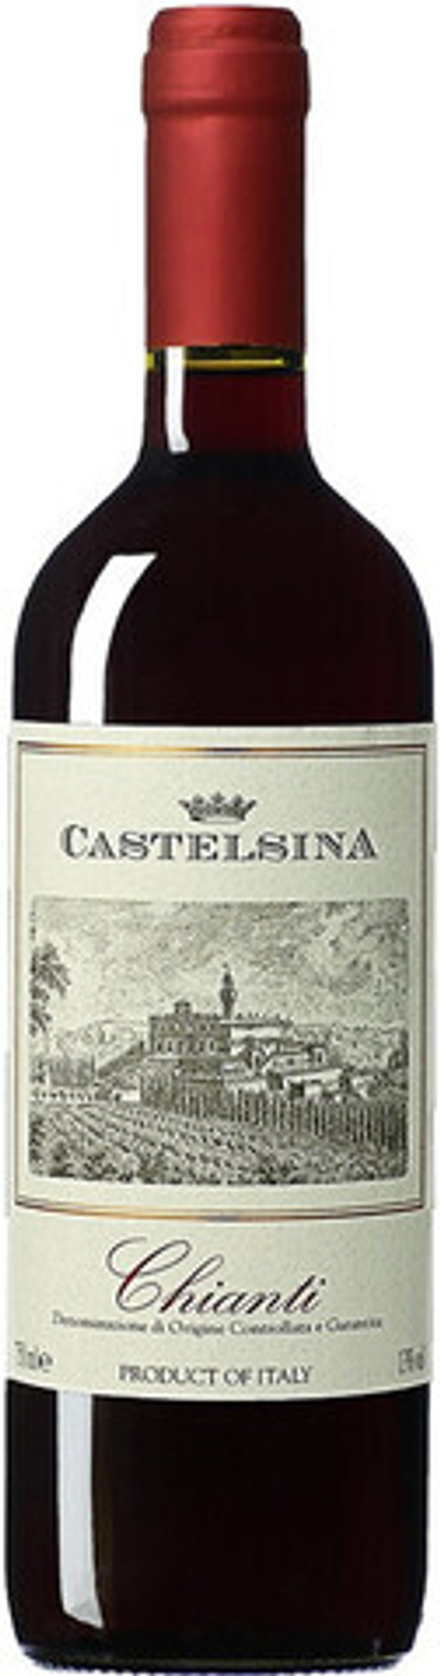 Вино Castelsina Chianti DOCG, 0,75 л.